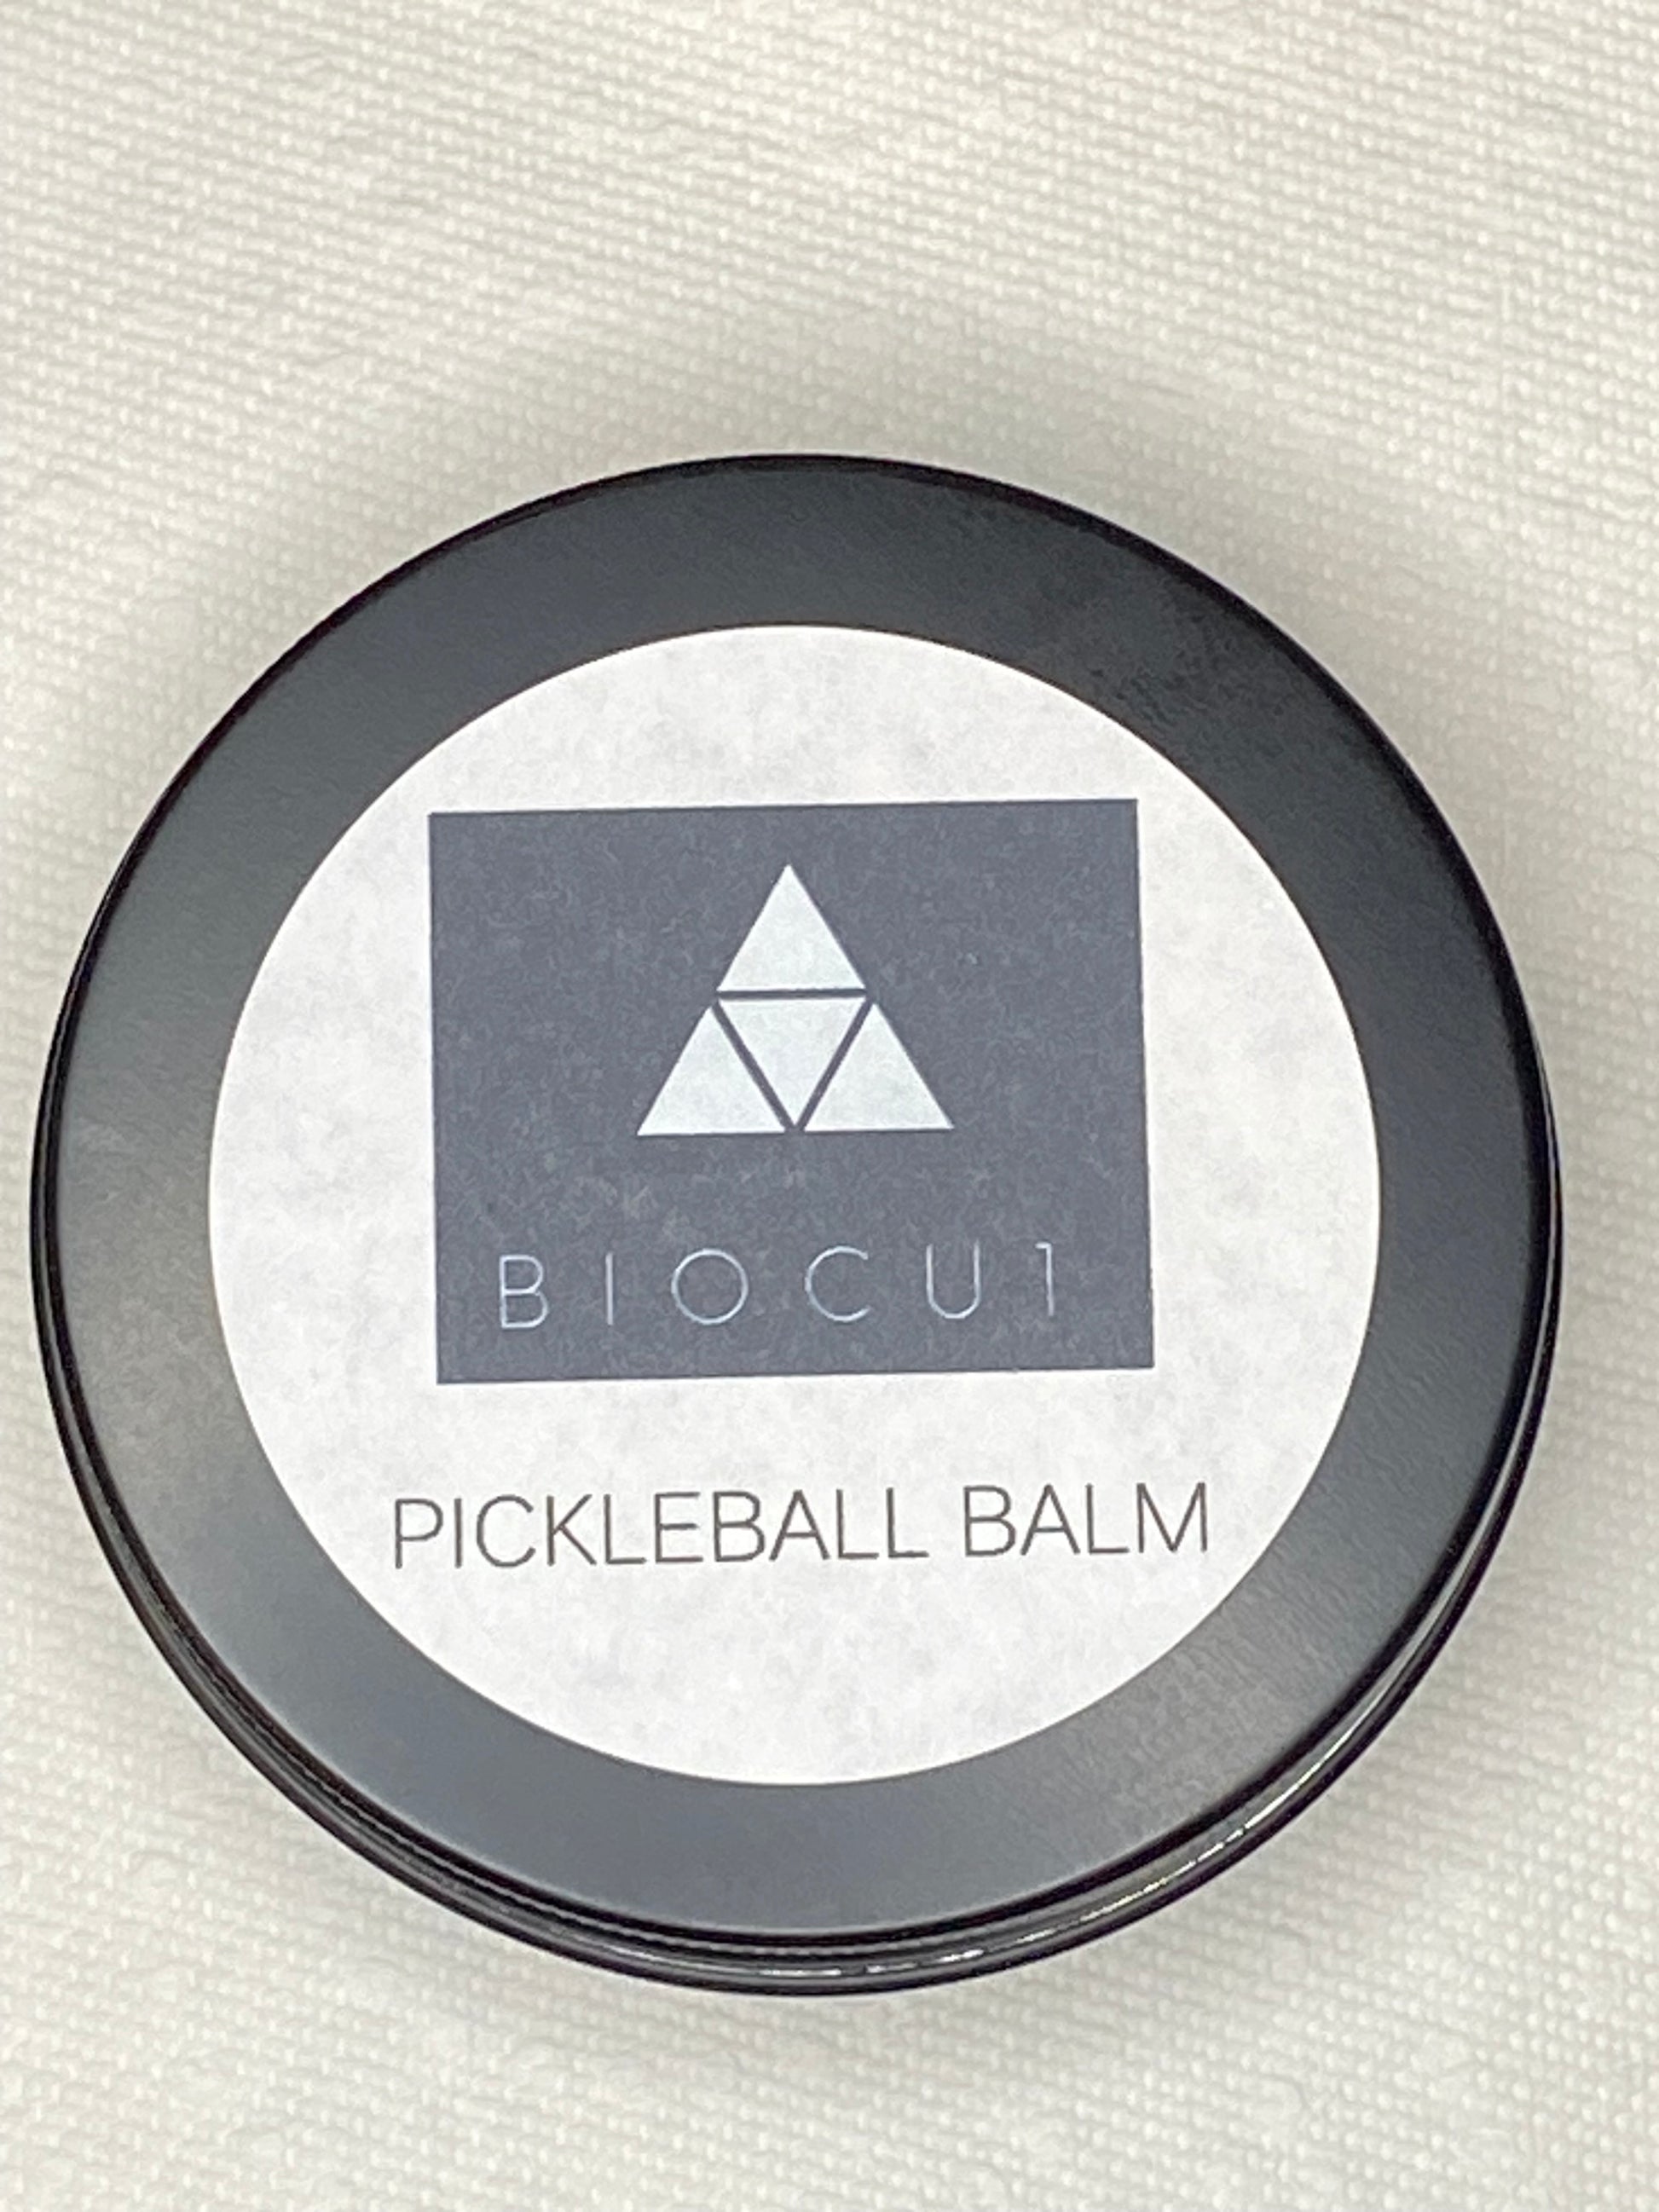 Pickleball Balm BioCu1